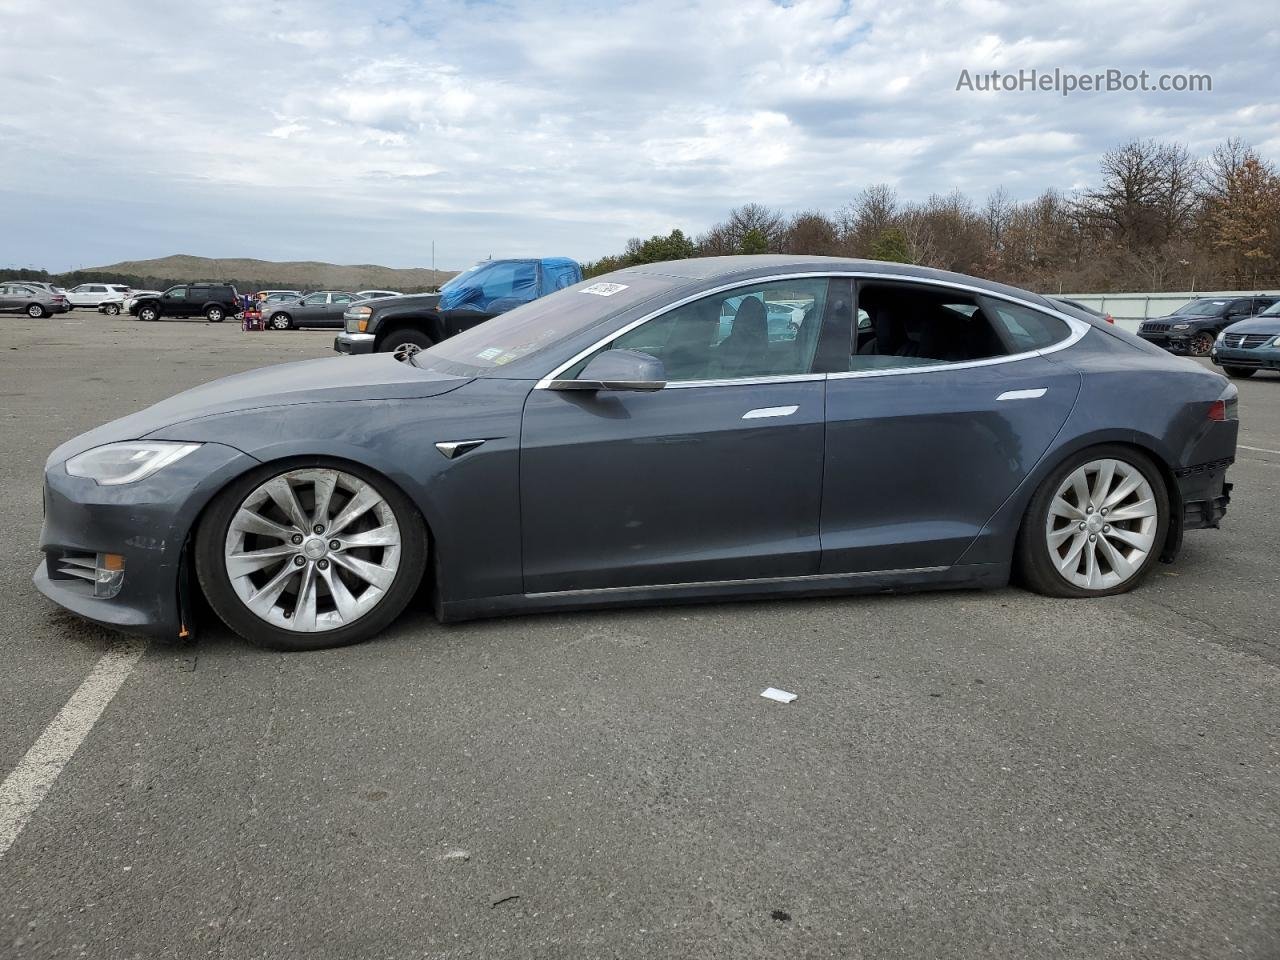 2019 Tesla Model S  Угольный vin: 5YJSA1E23KF342830